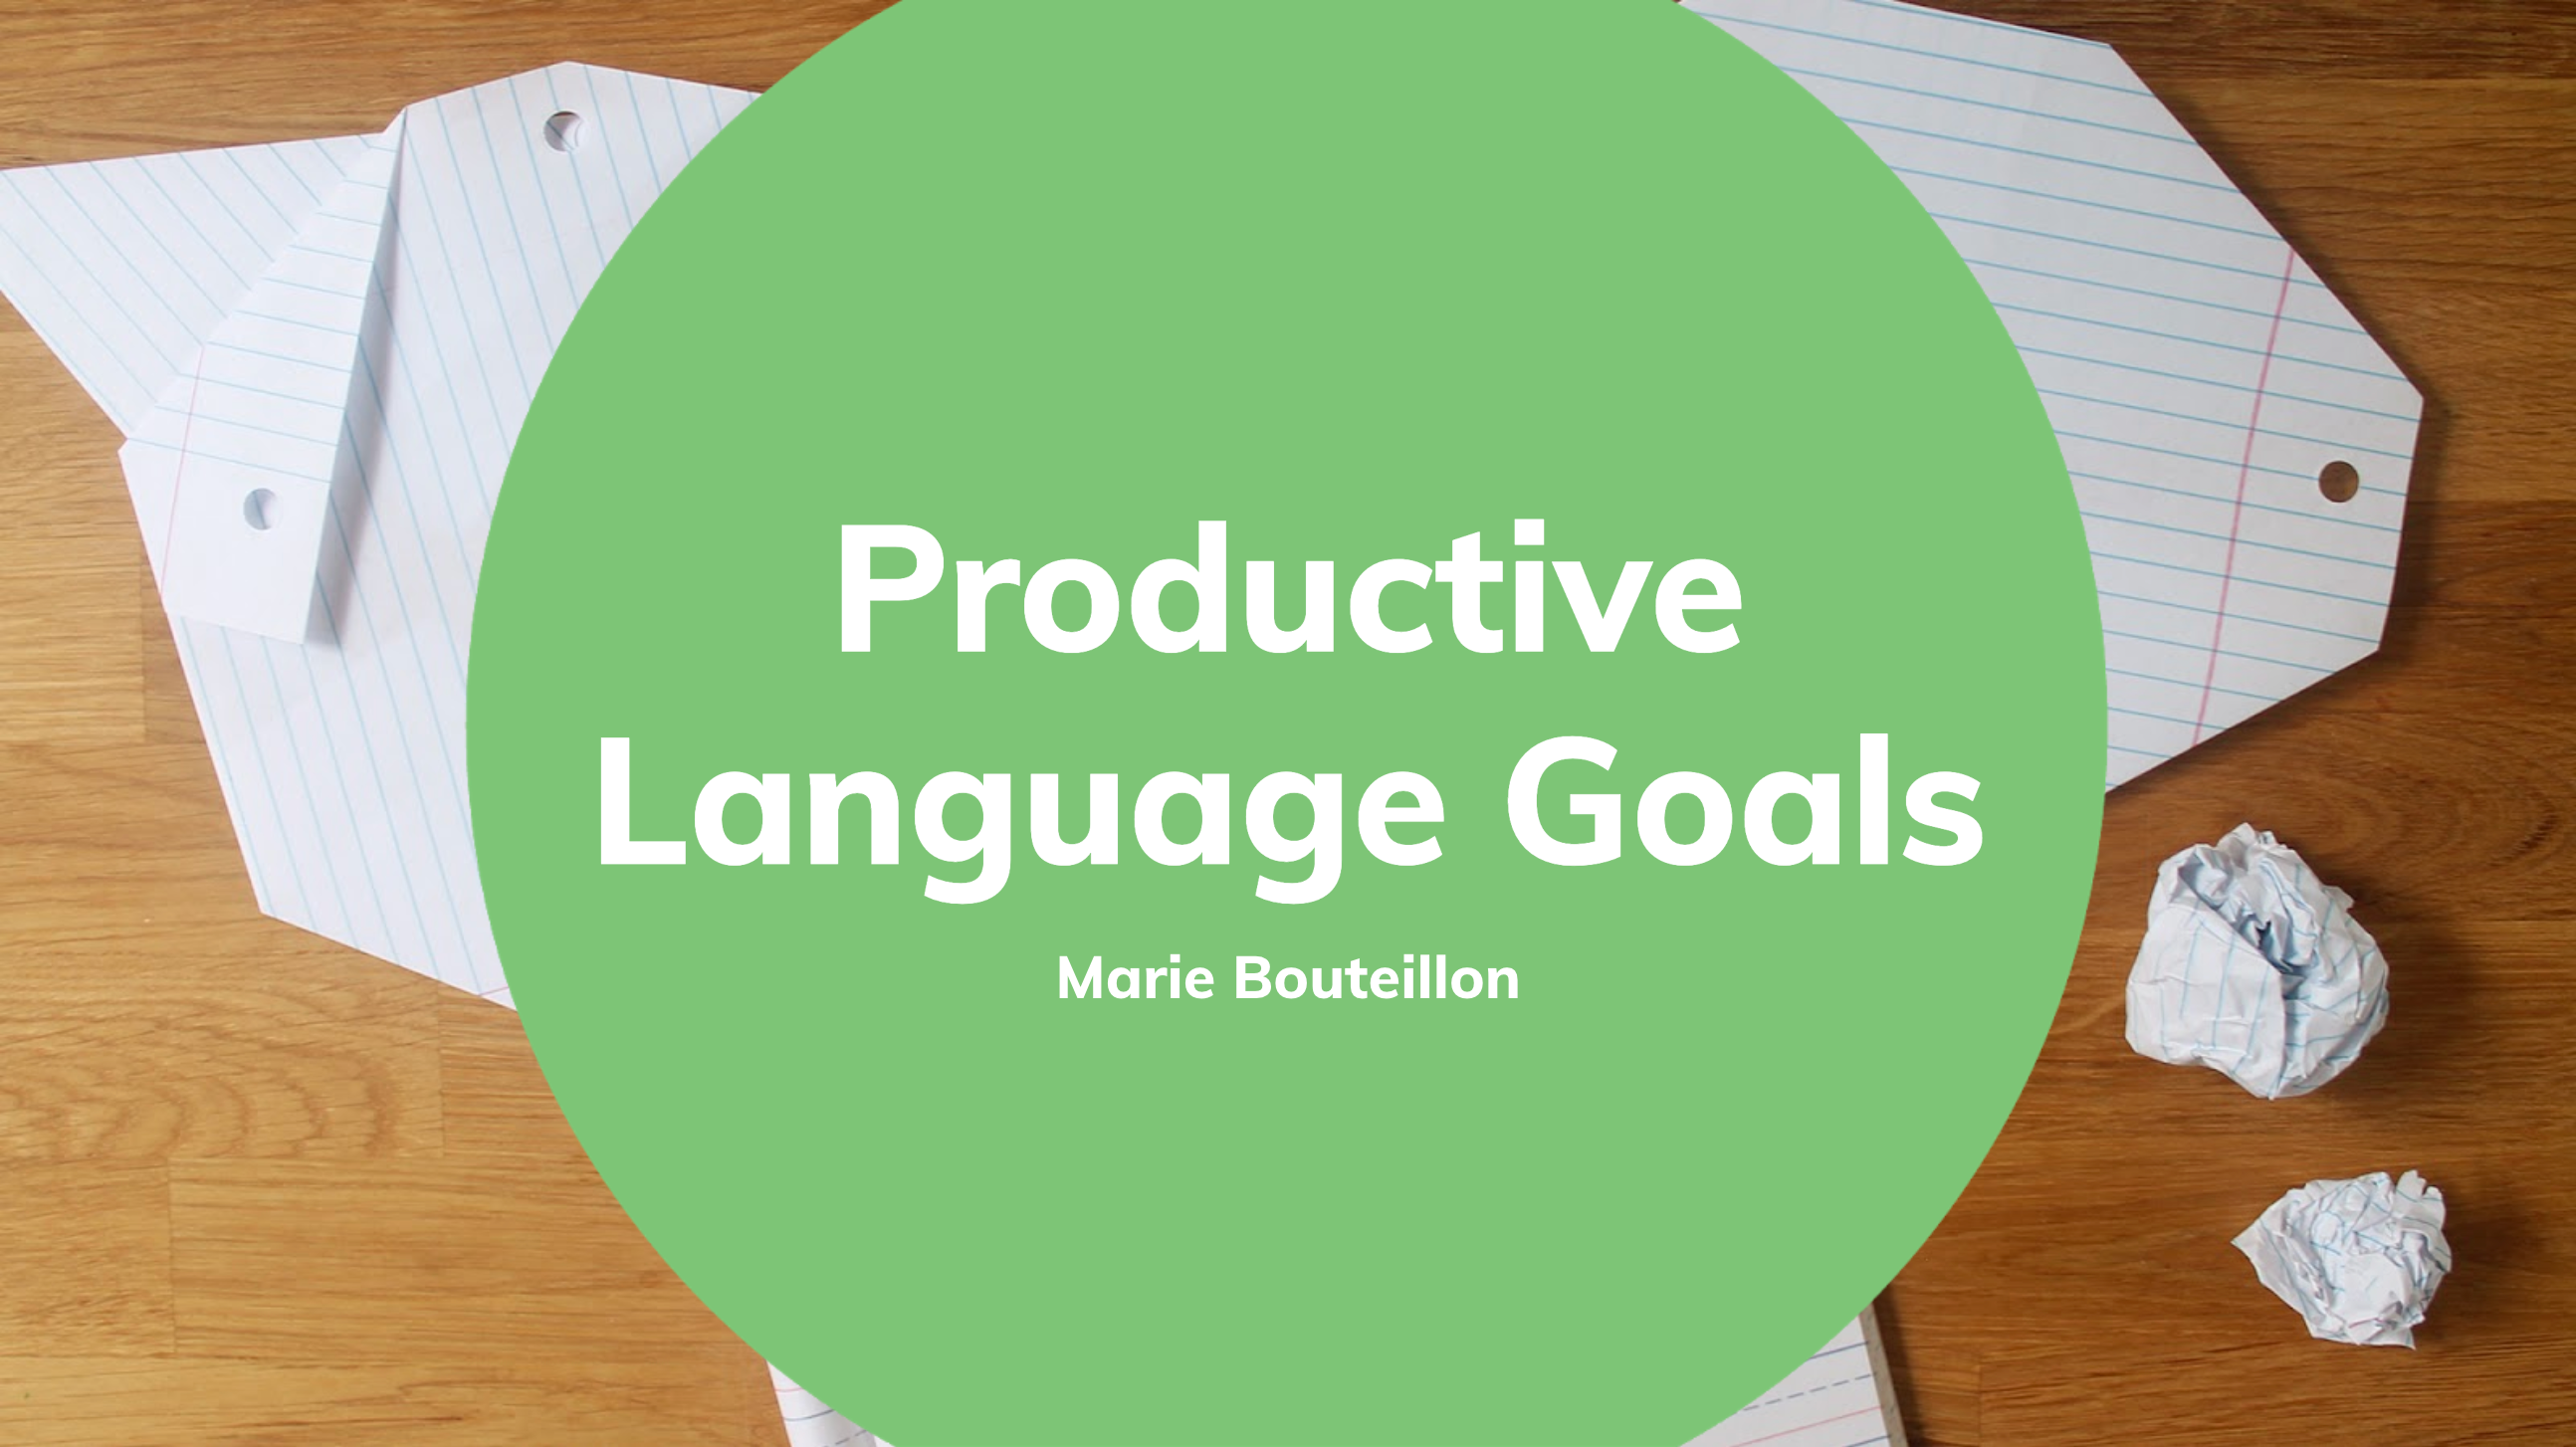 Productive Language Goals 08/03/2021 - Webinar